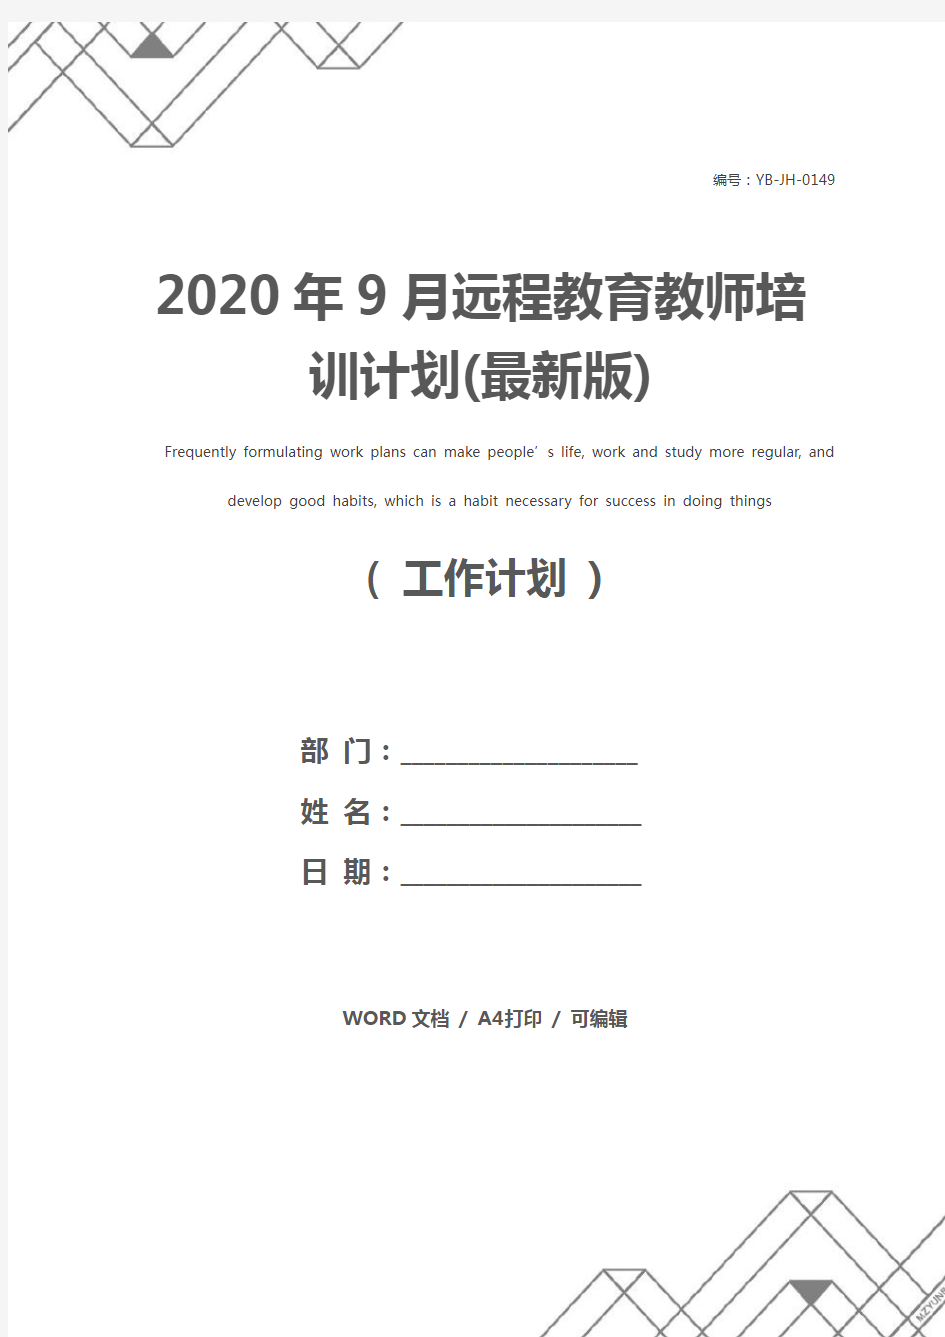 2020年9月远程教育教师培训计划(最新版)